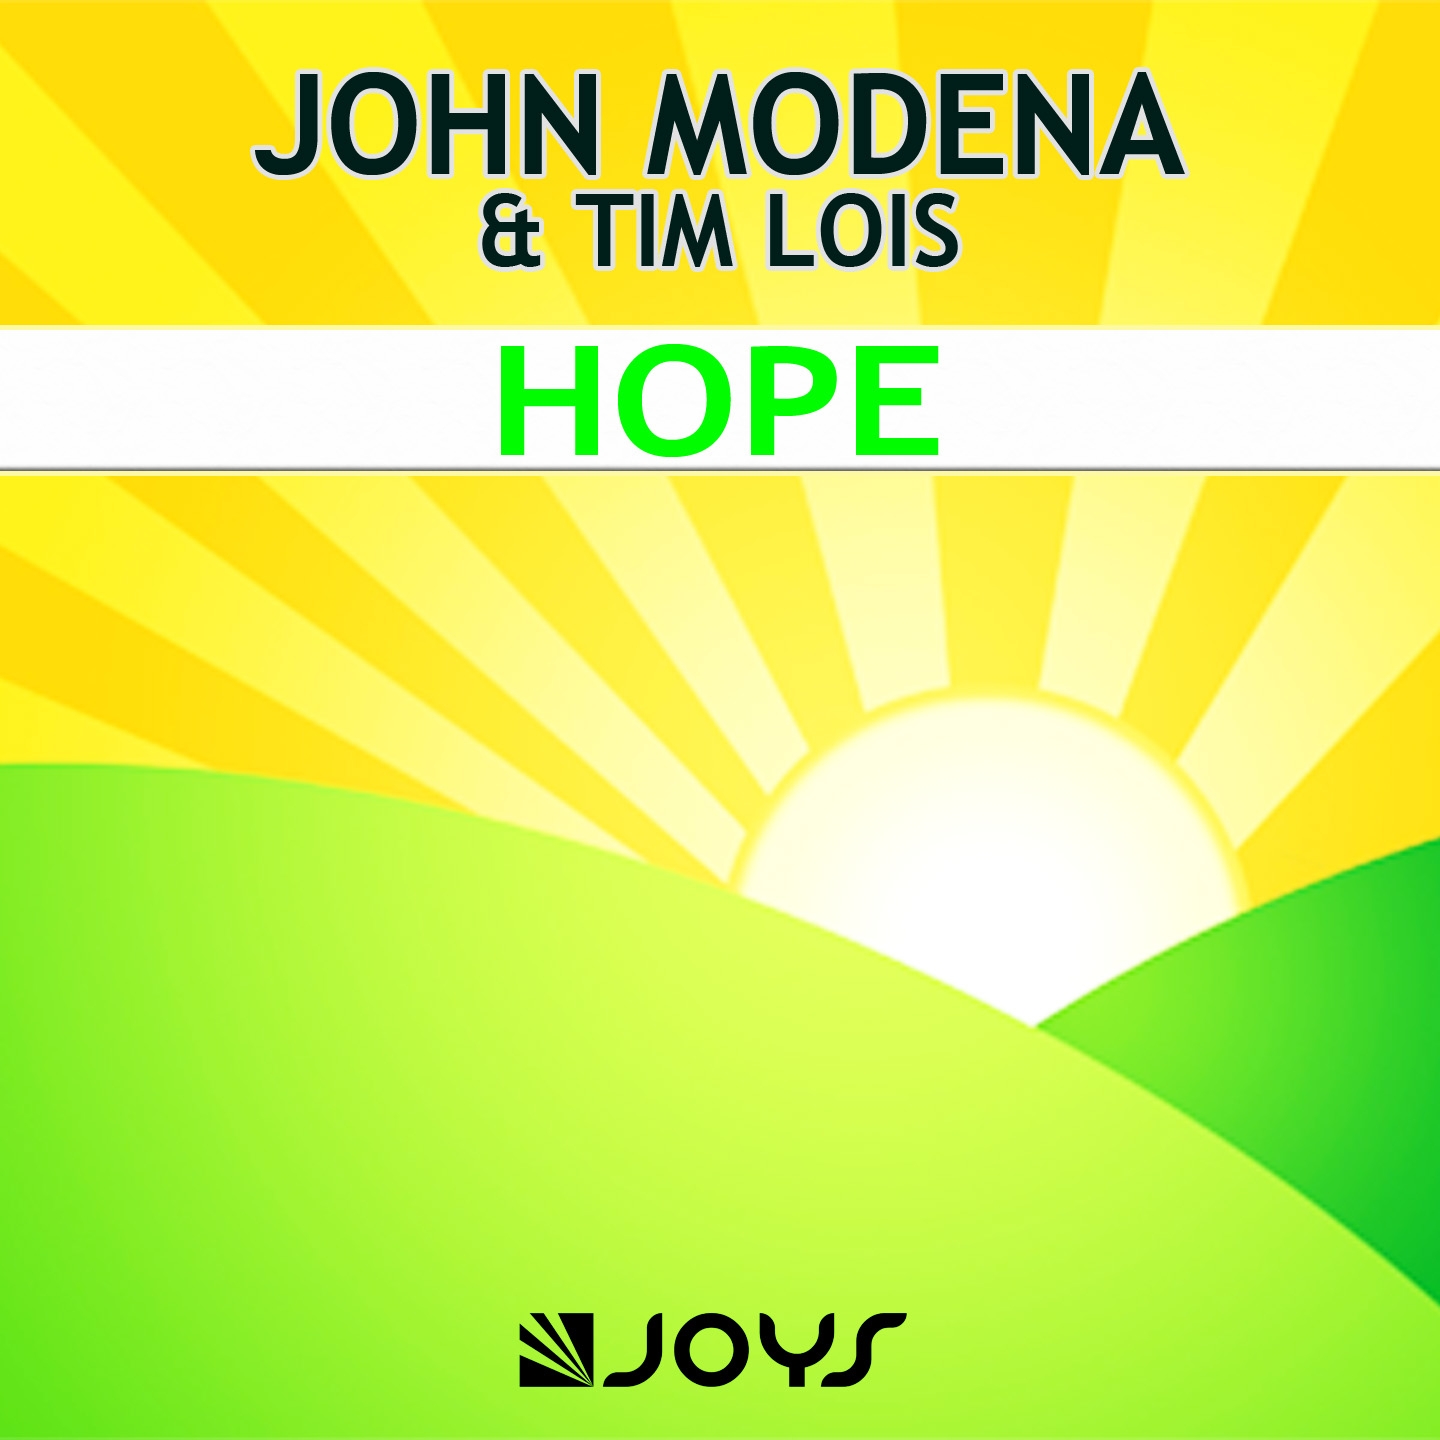 Hope (Radio Edit)